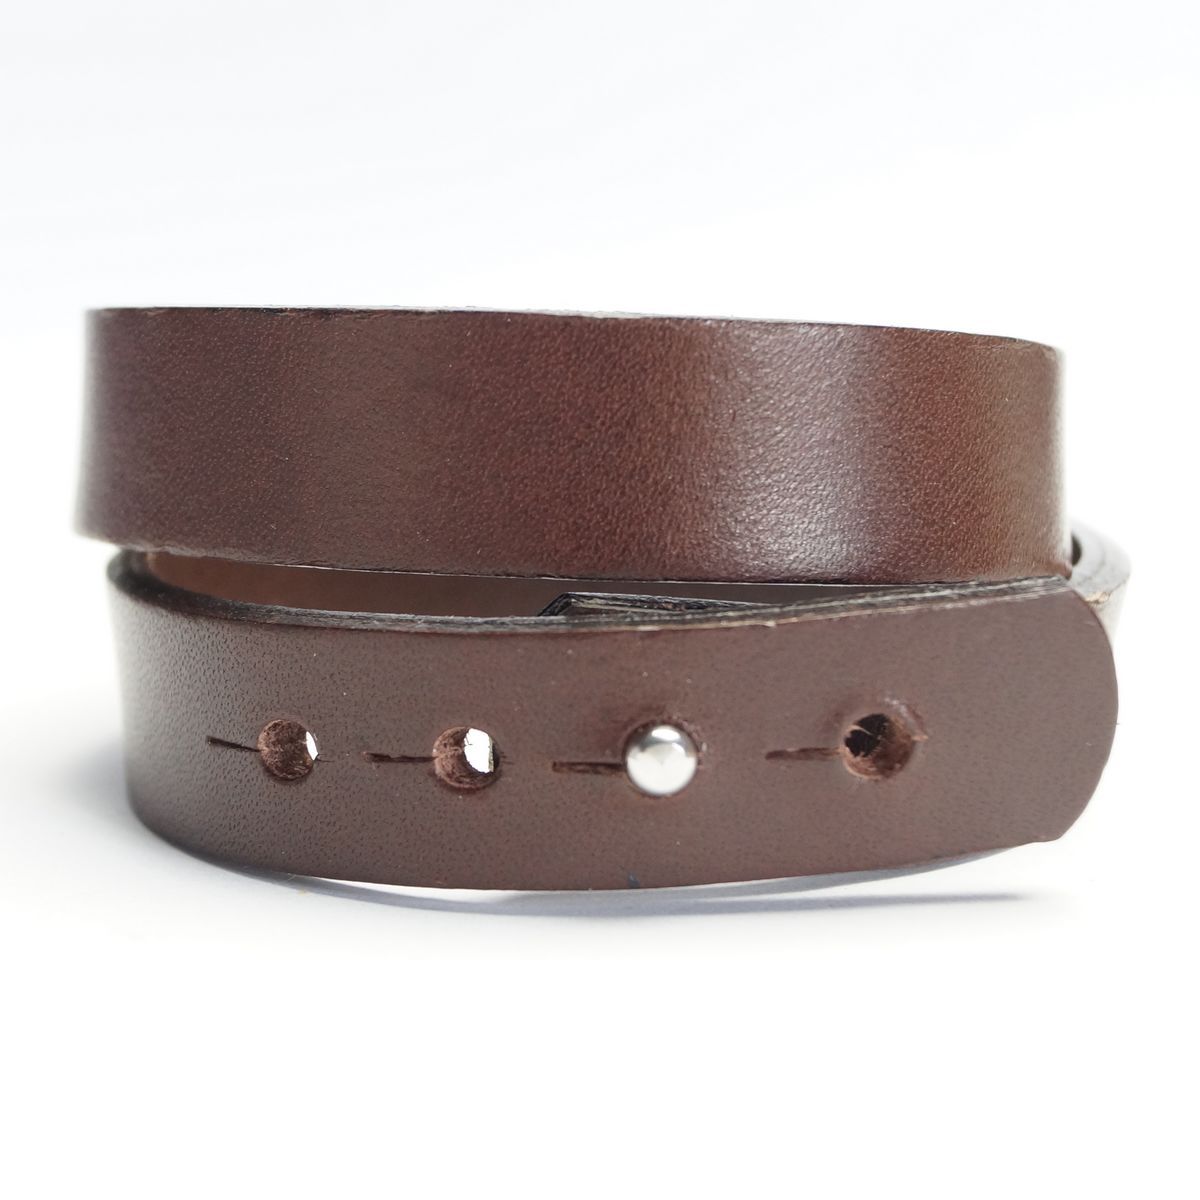 Dobbelt Læder Armbånd - Mørkebrunt - Smykke fra The Leather Belt Co. hos The Prince Webshop